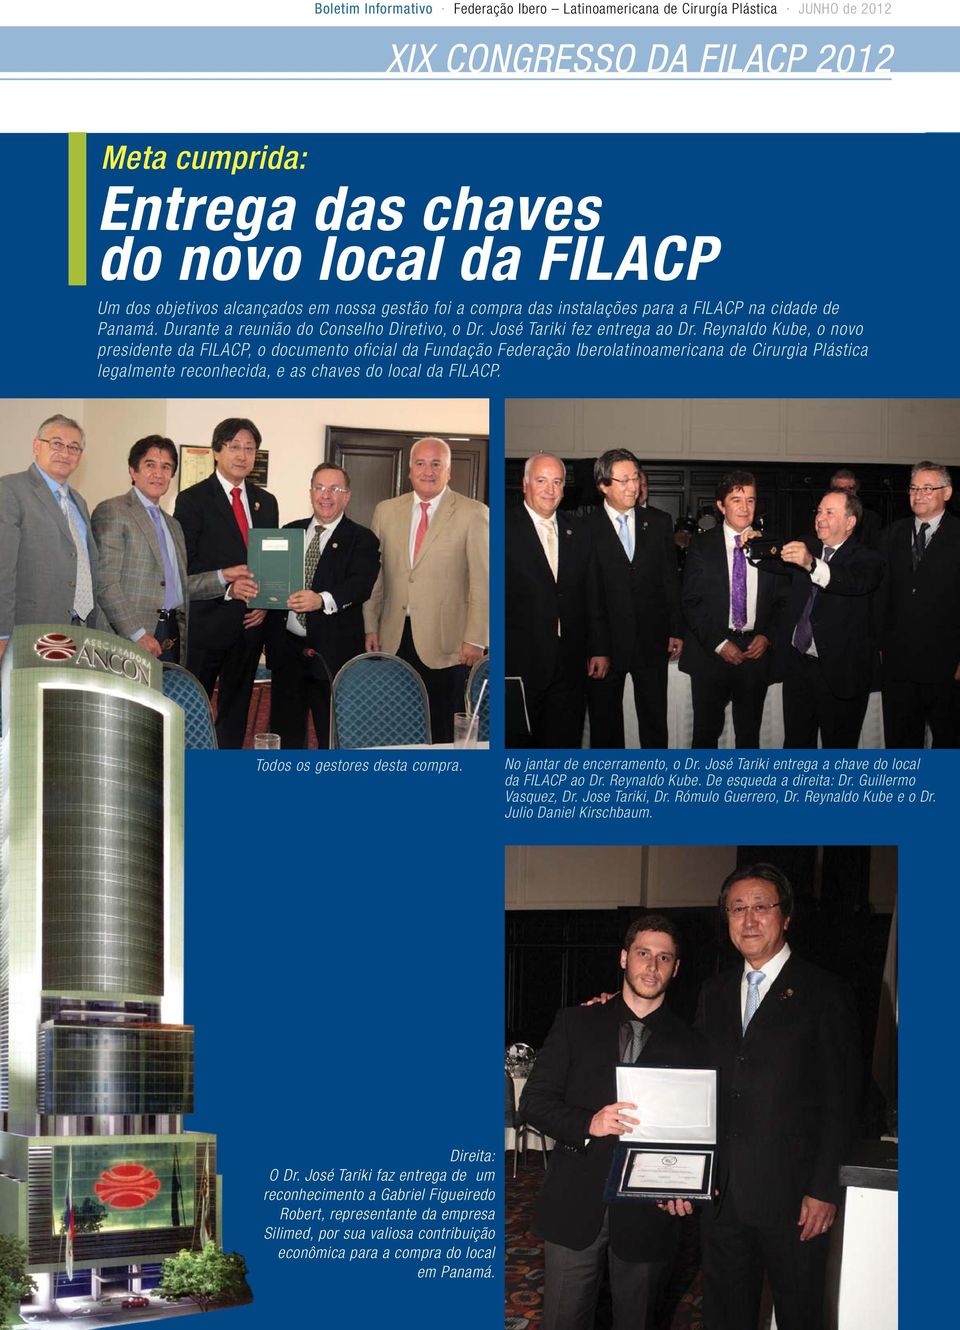 Reynaldo Kube, o novo presidente da FILACP, o documento oficial da Fundação Federação Iberolatinoamericana de Cirurgia Plástica legalmente reconhecida, e as chaves do local da FILACP.